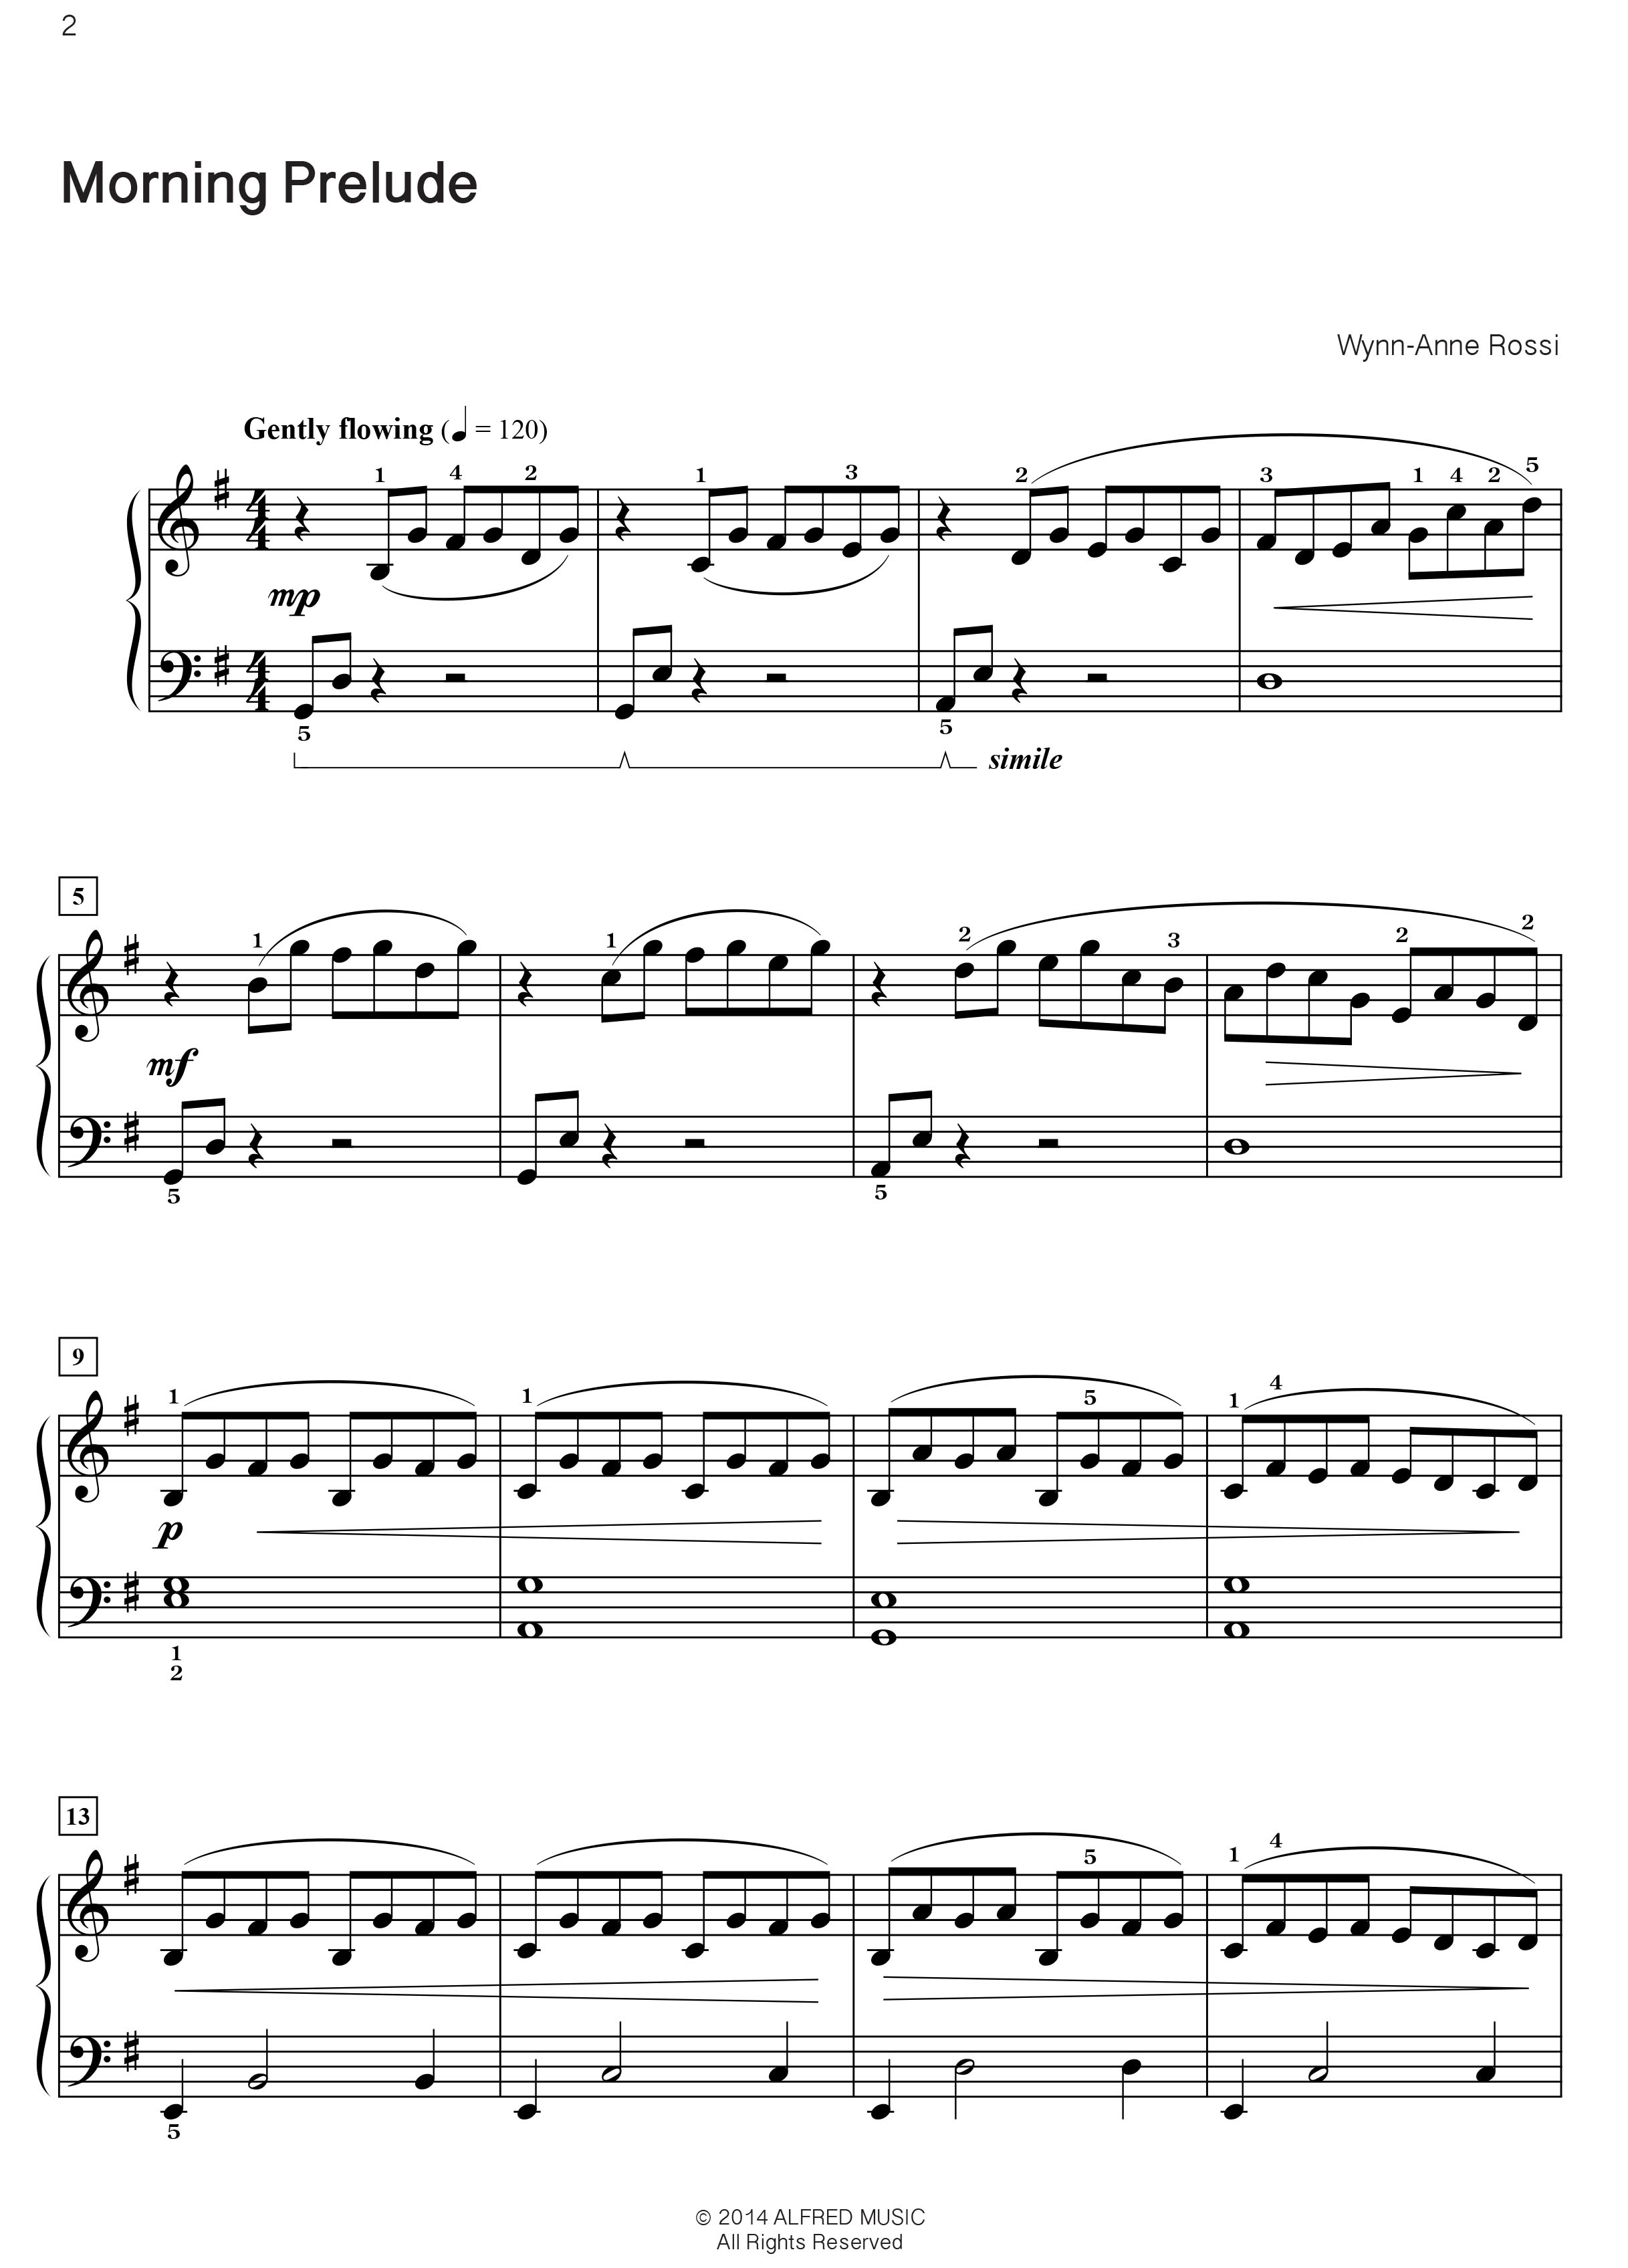 One of a Kind Solos, Book 3 - 9 Unique Piano Pieces noty pro klavír